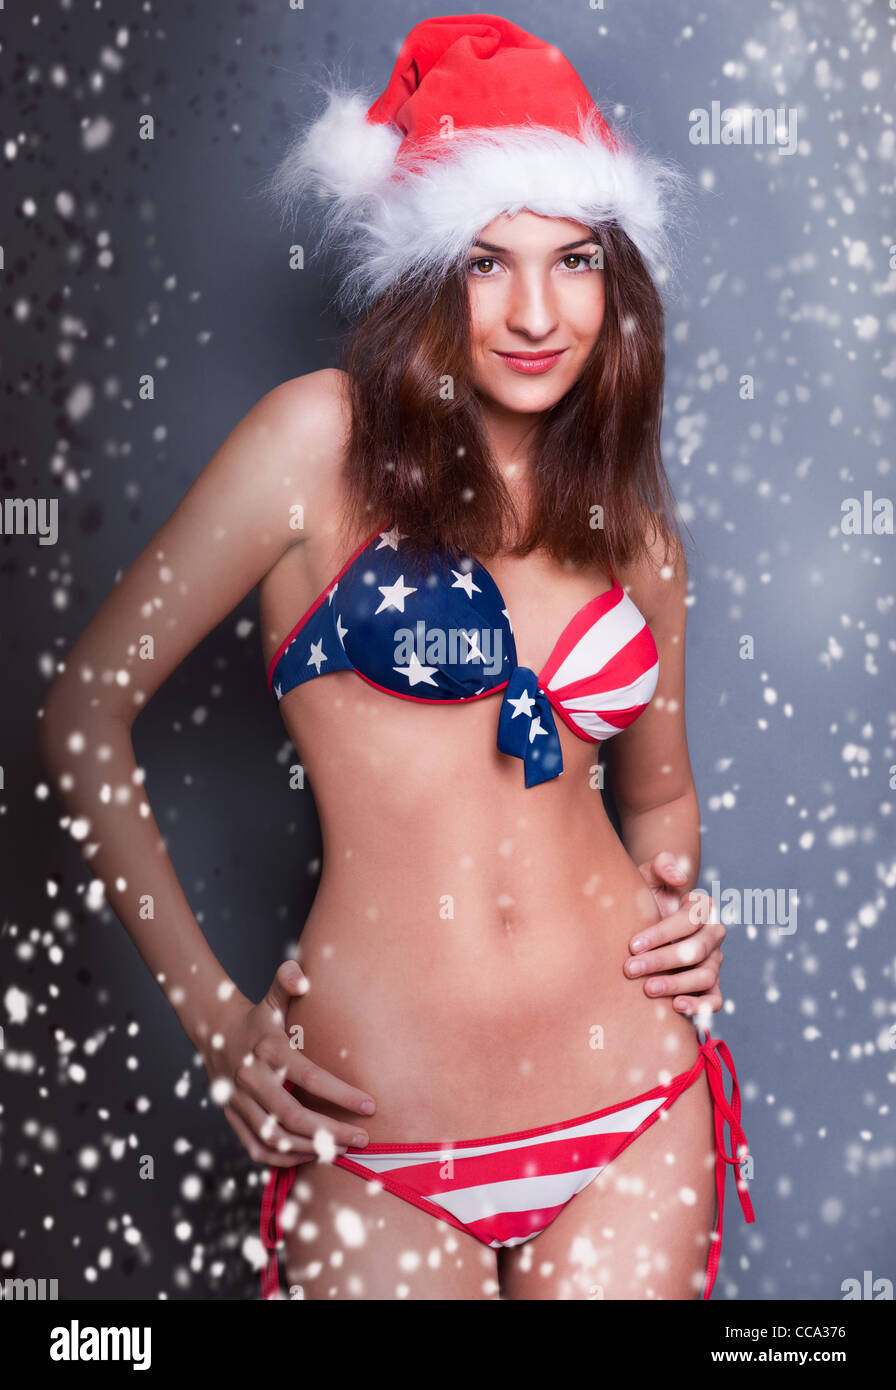 20-25 Jahre alte schöne Frau in Weihnachtsmütze und Badeanzug mit amerikanischen Flagge. Schneeflocken um sie herum Stockfoto